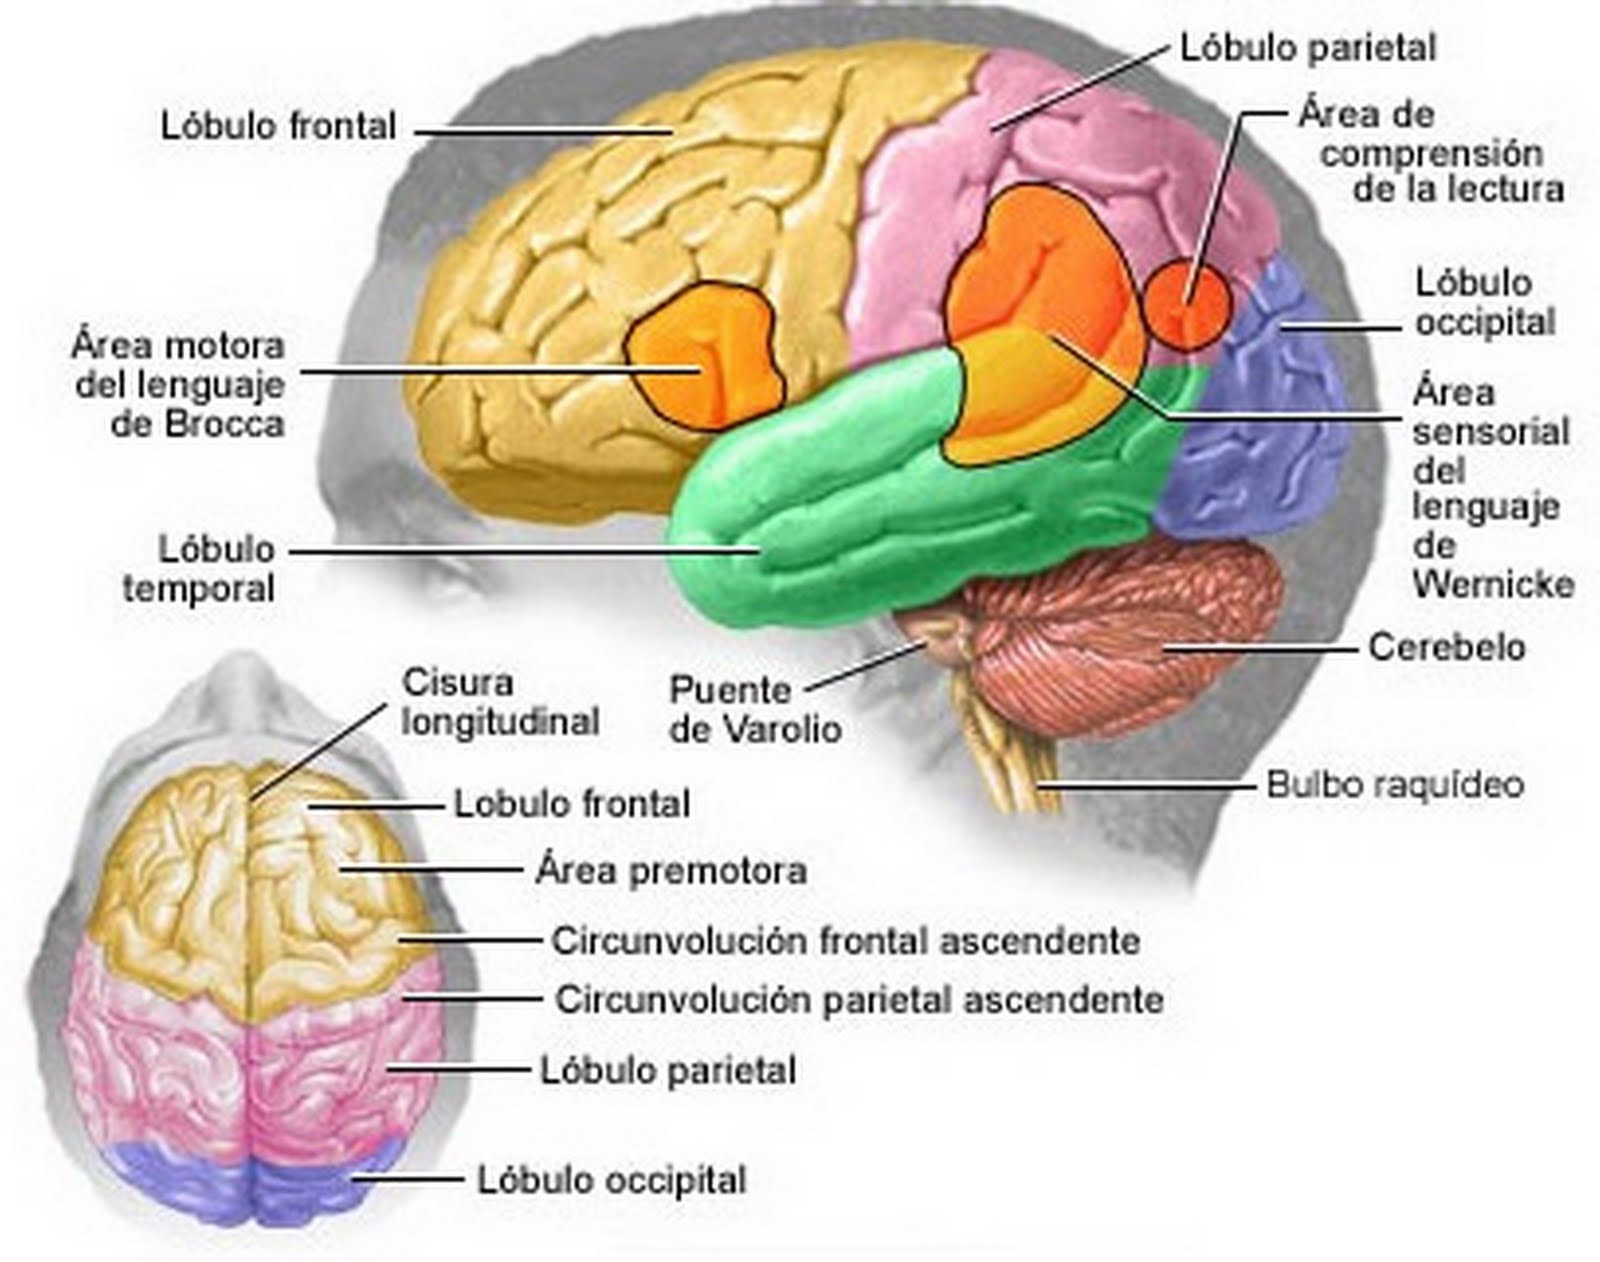 Brain zone. Функциональные центры теменной доли. Височно-теменной узел мозга. Центры теменной доли мозга.